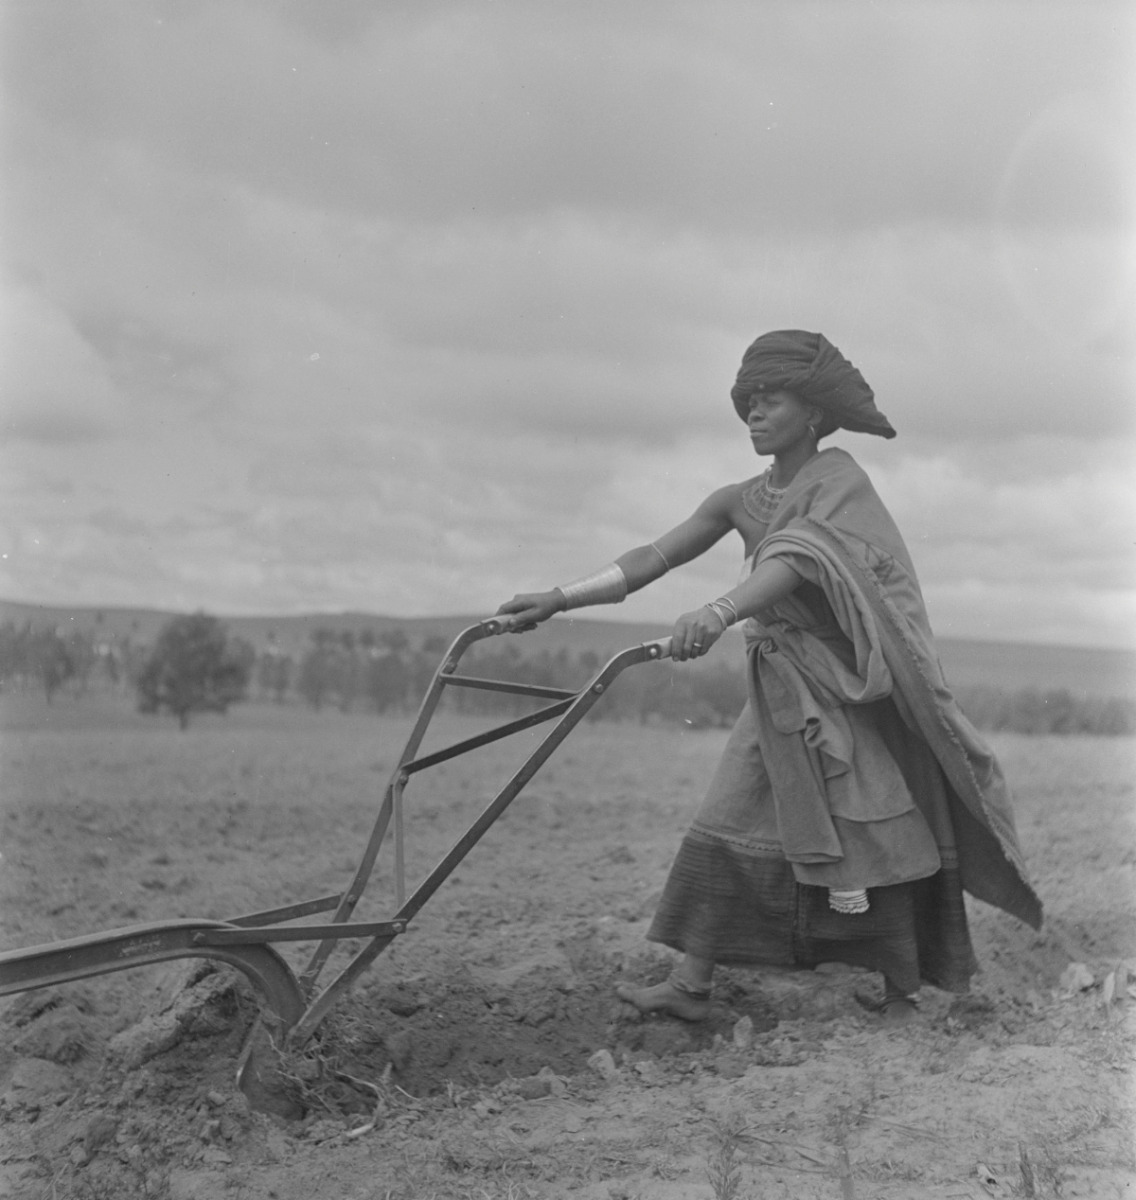 Femme labourant, Transkei, 1947. Femme au travail dans les champs pendant que les hommes travaillent dans les mines. Photo by Constance Stuart Larrabee